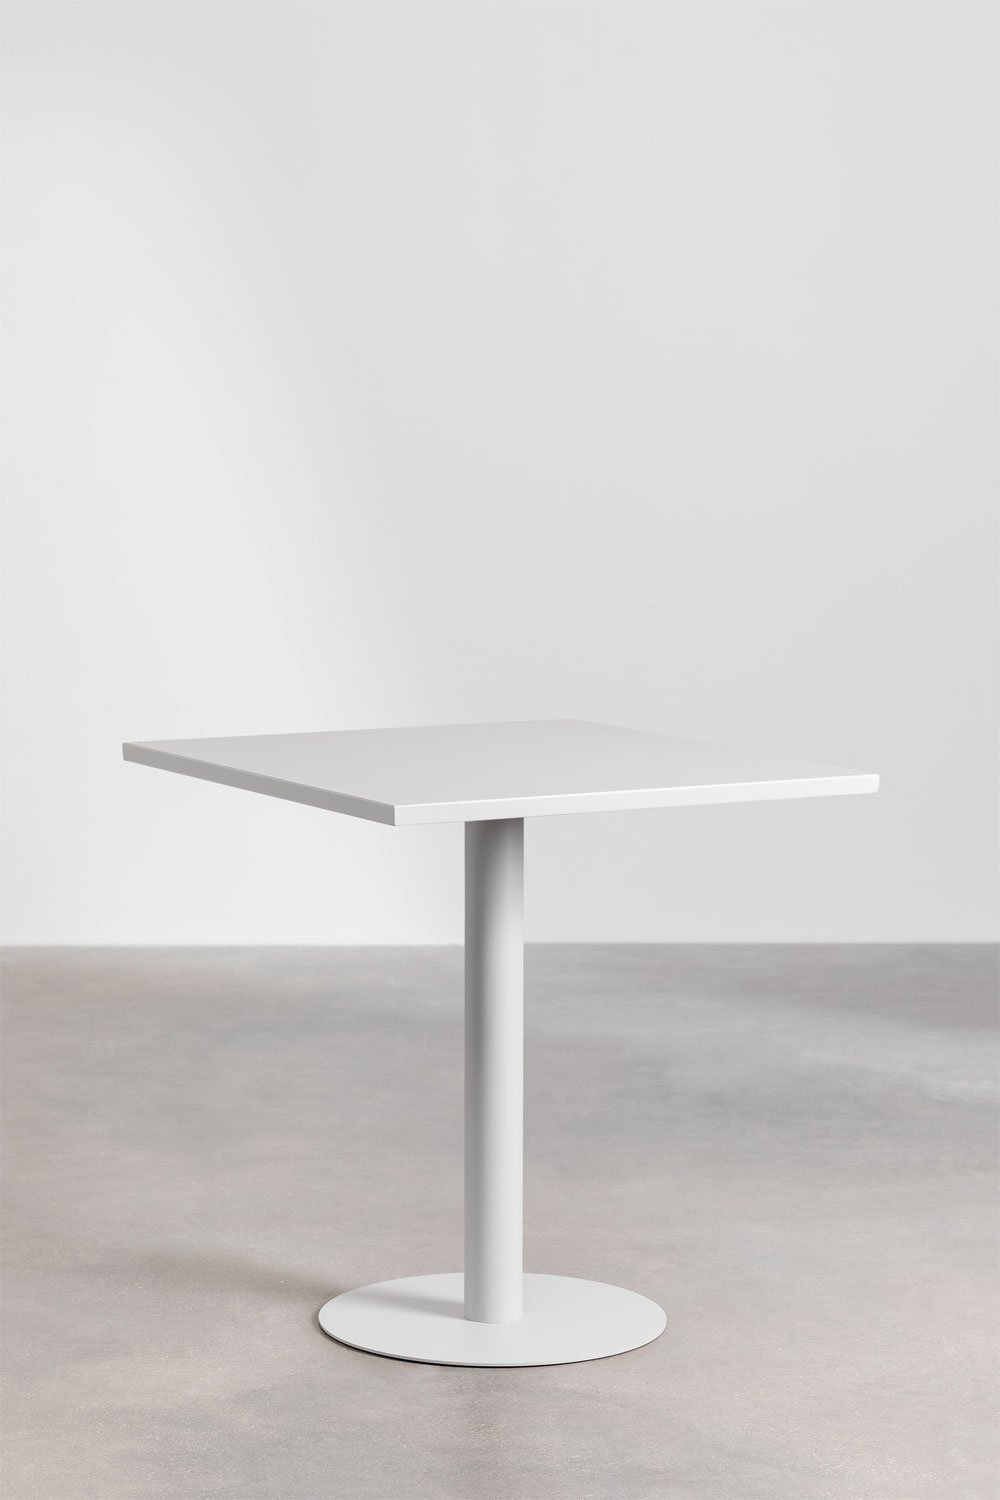 Mesa de jantar quadrada de metal (70x70 cm) Mizzi, imagem de galeria 1